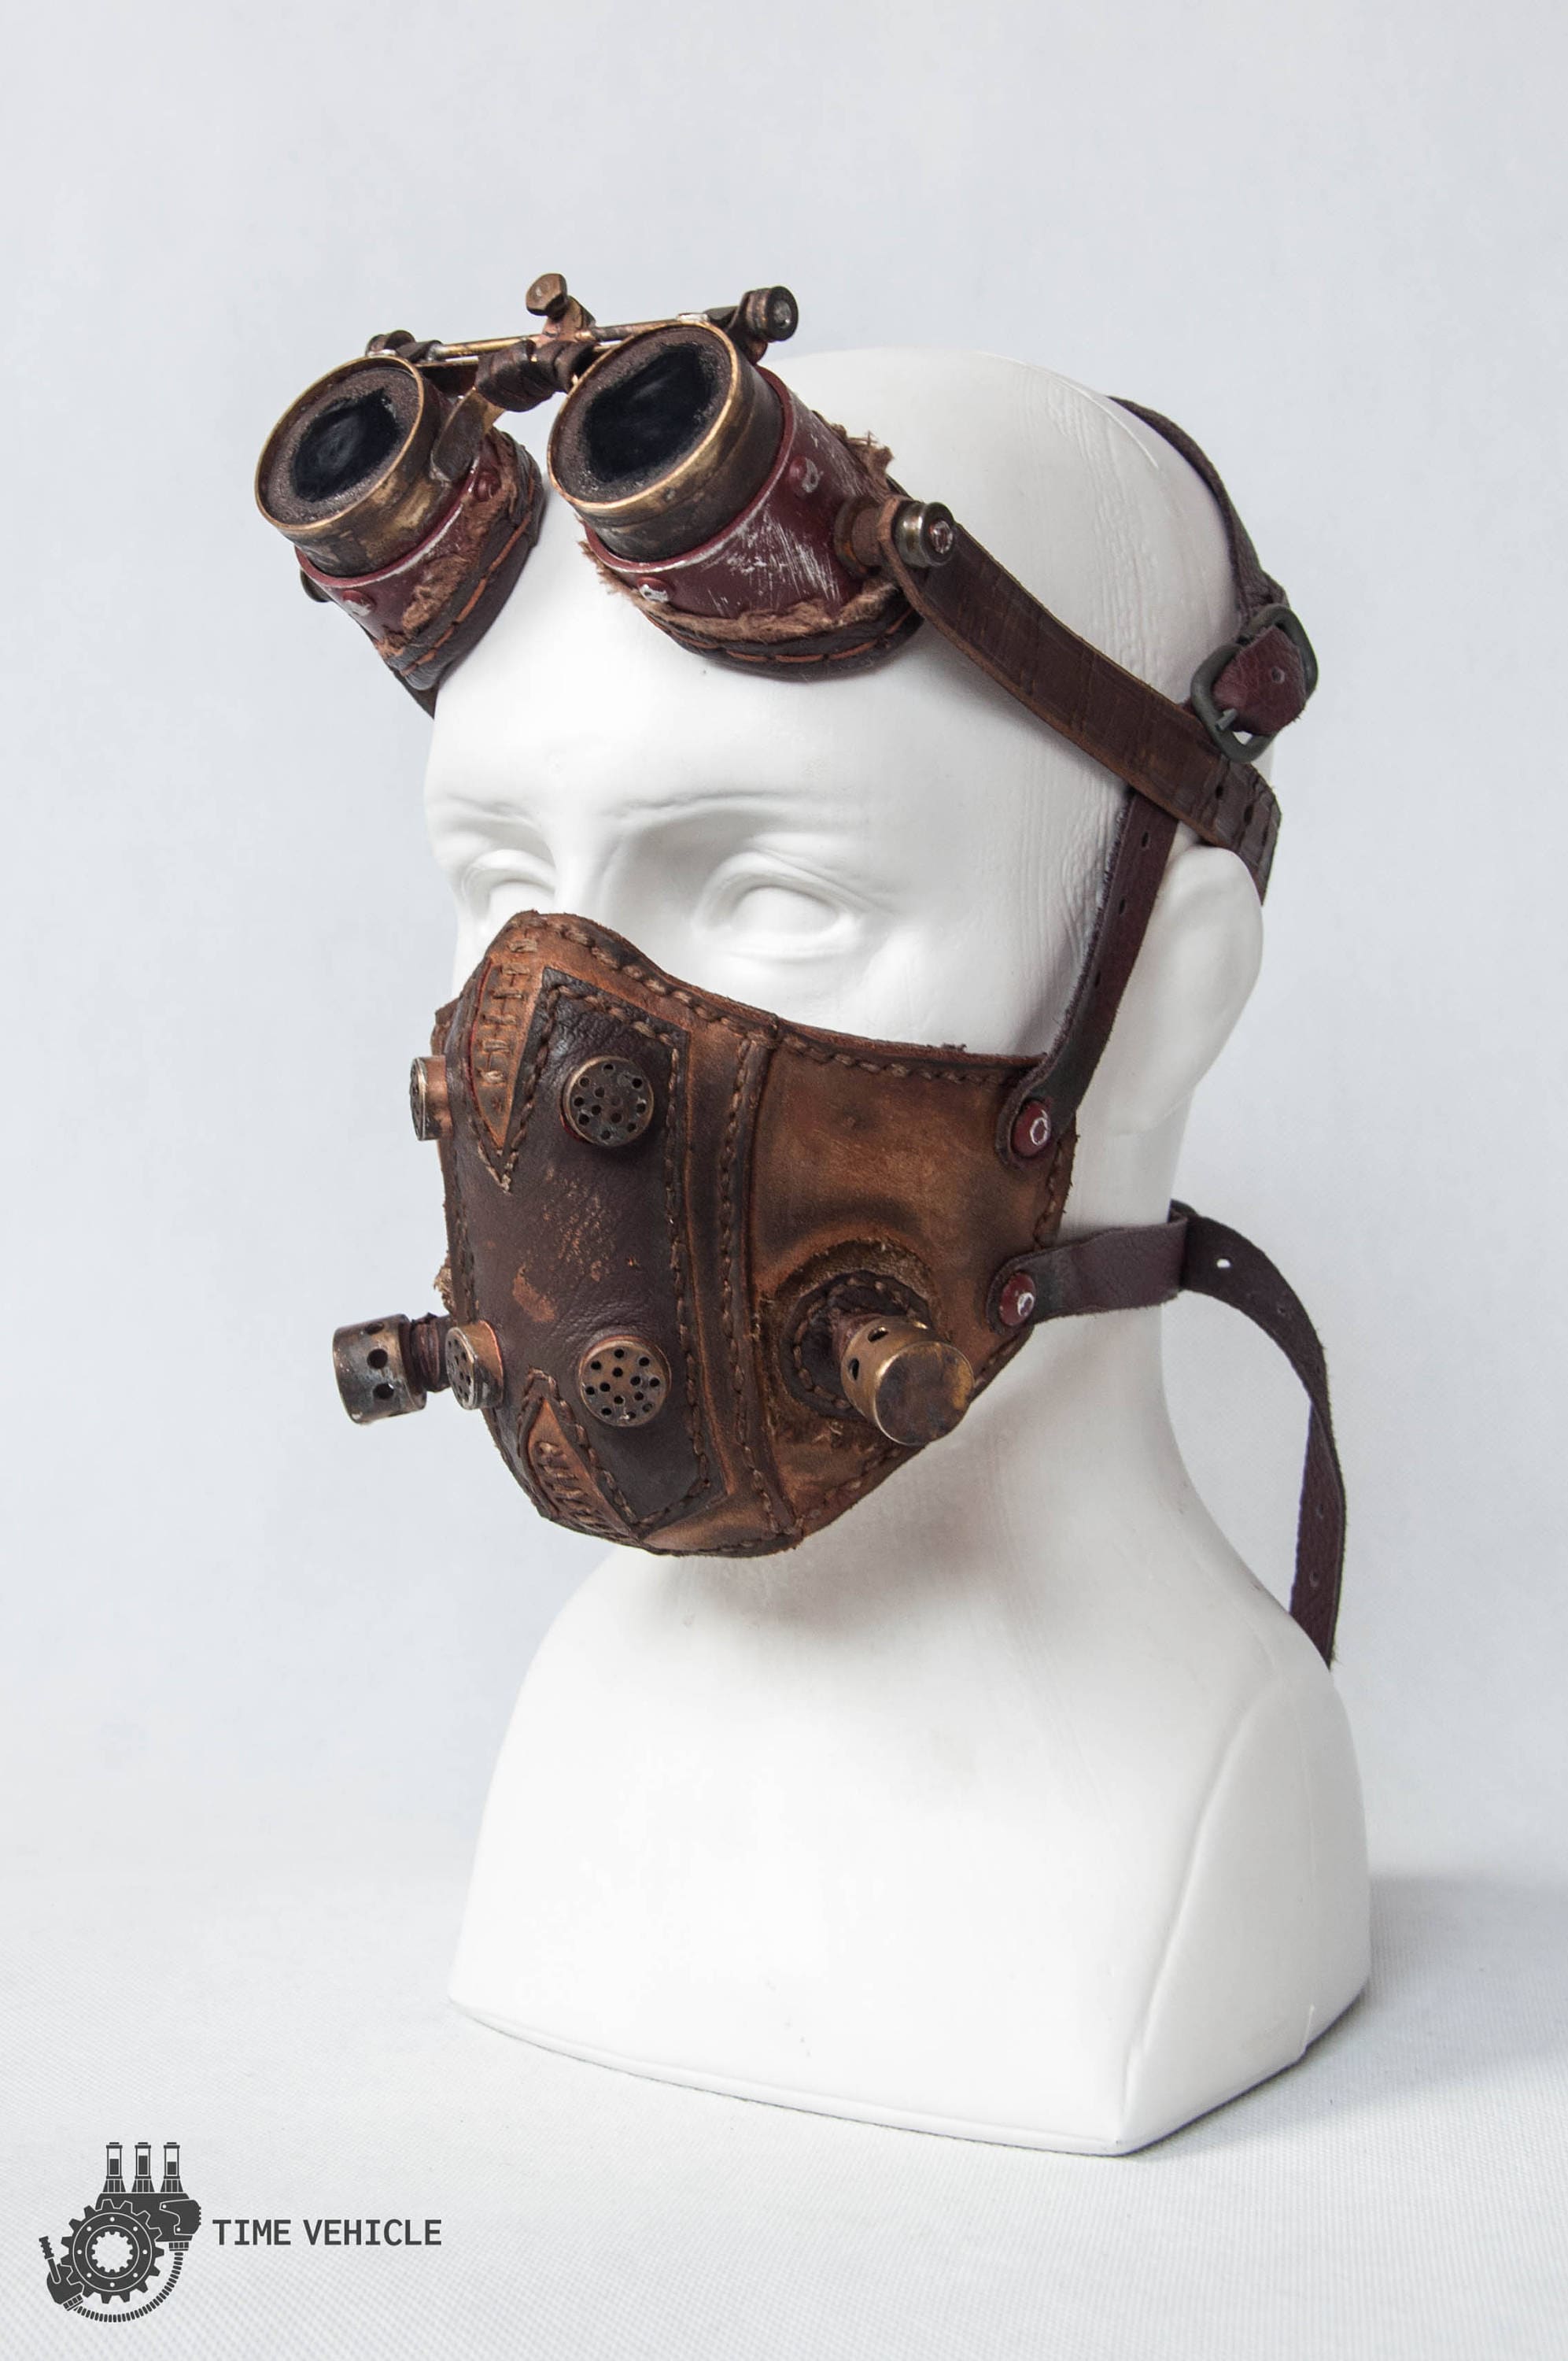 Masque moto en cuir (sans filtre) - Sankakel